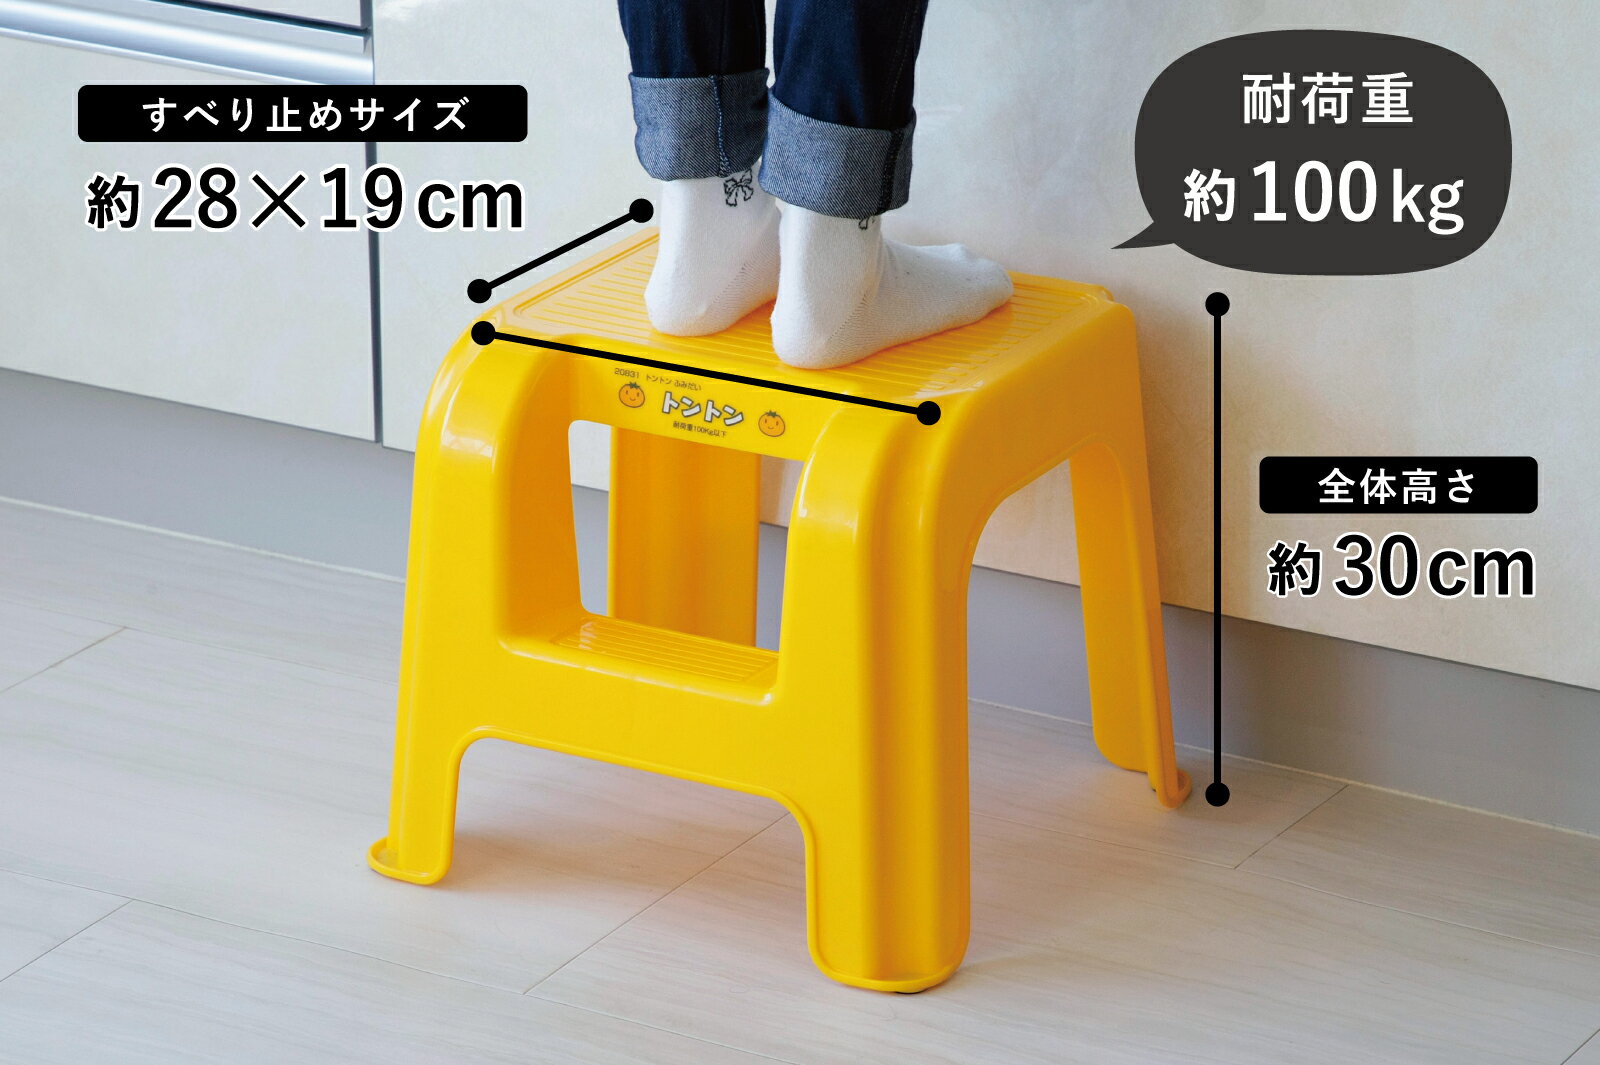 レッツクッキング トントン ふみだい日本製 イス 椅子 踏み台軽量 持ち運びらくらく 子供 お手伝い手洗い 洗面 下村企販